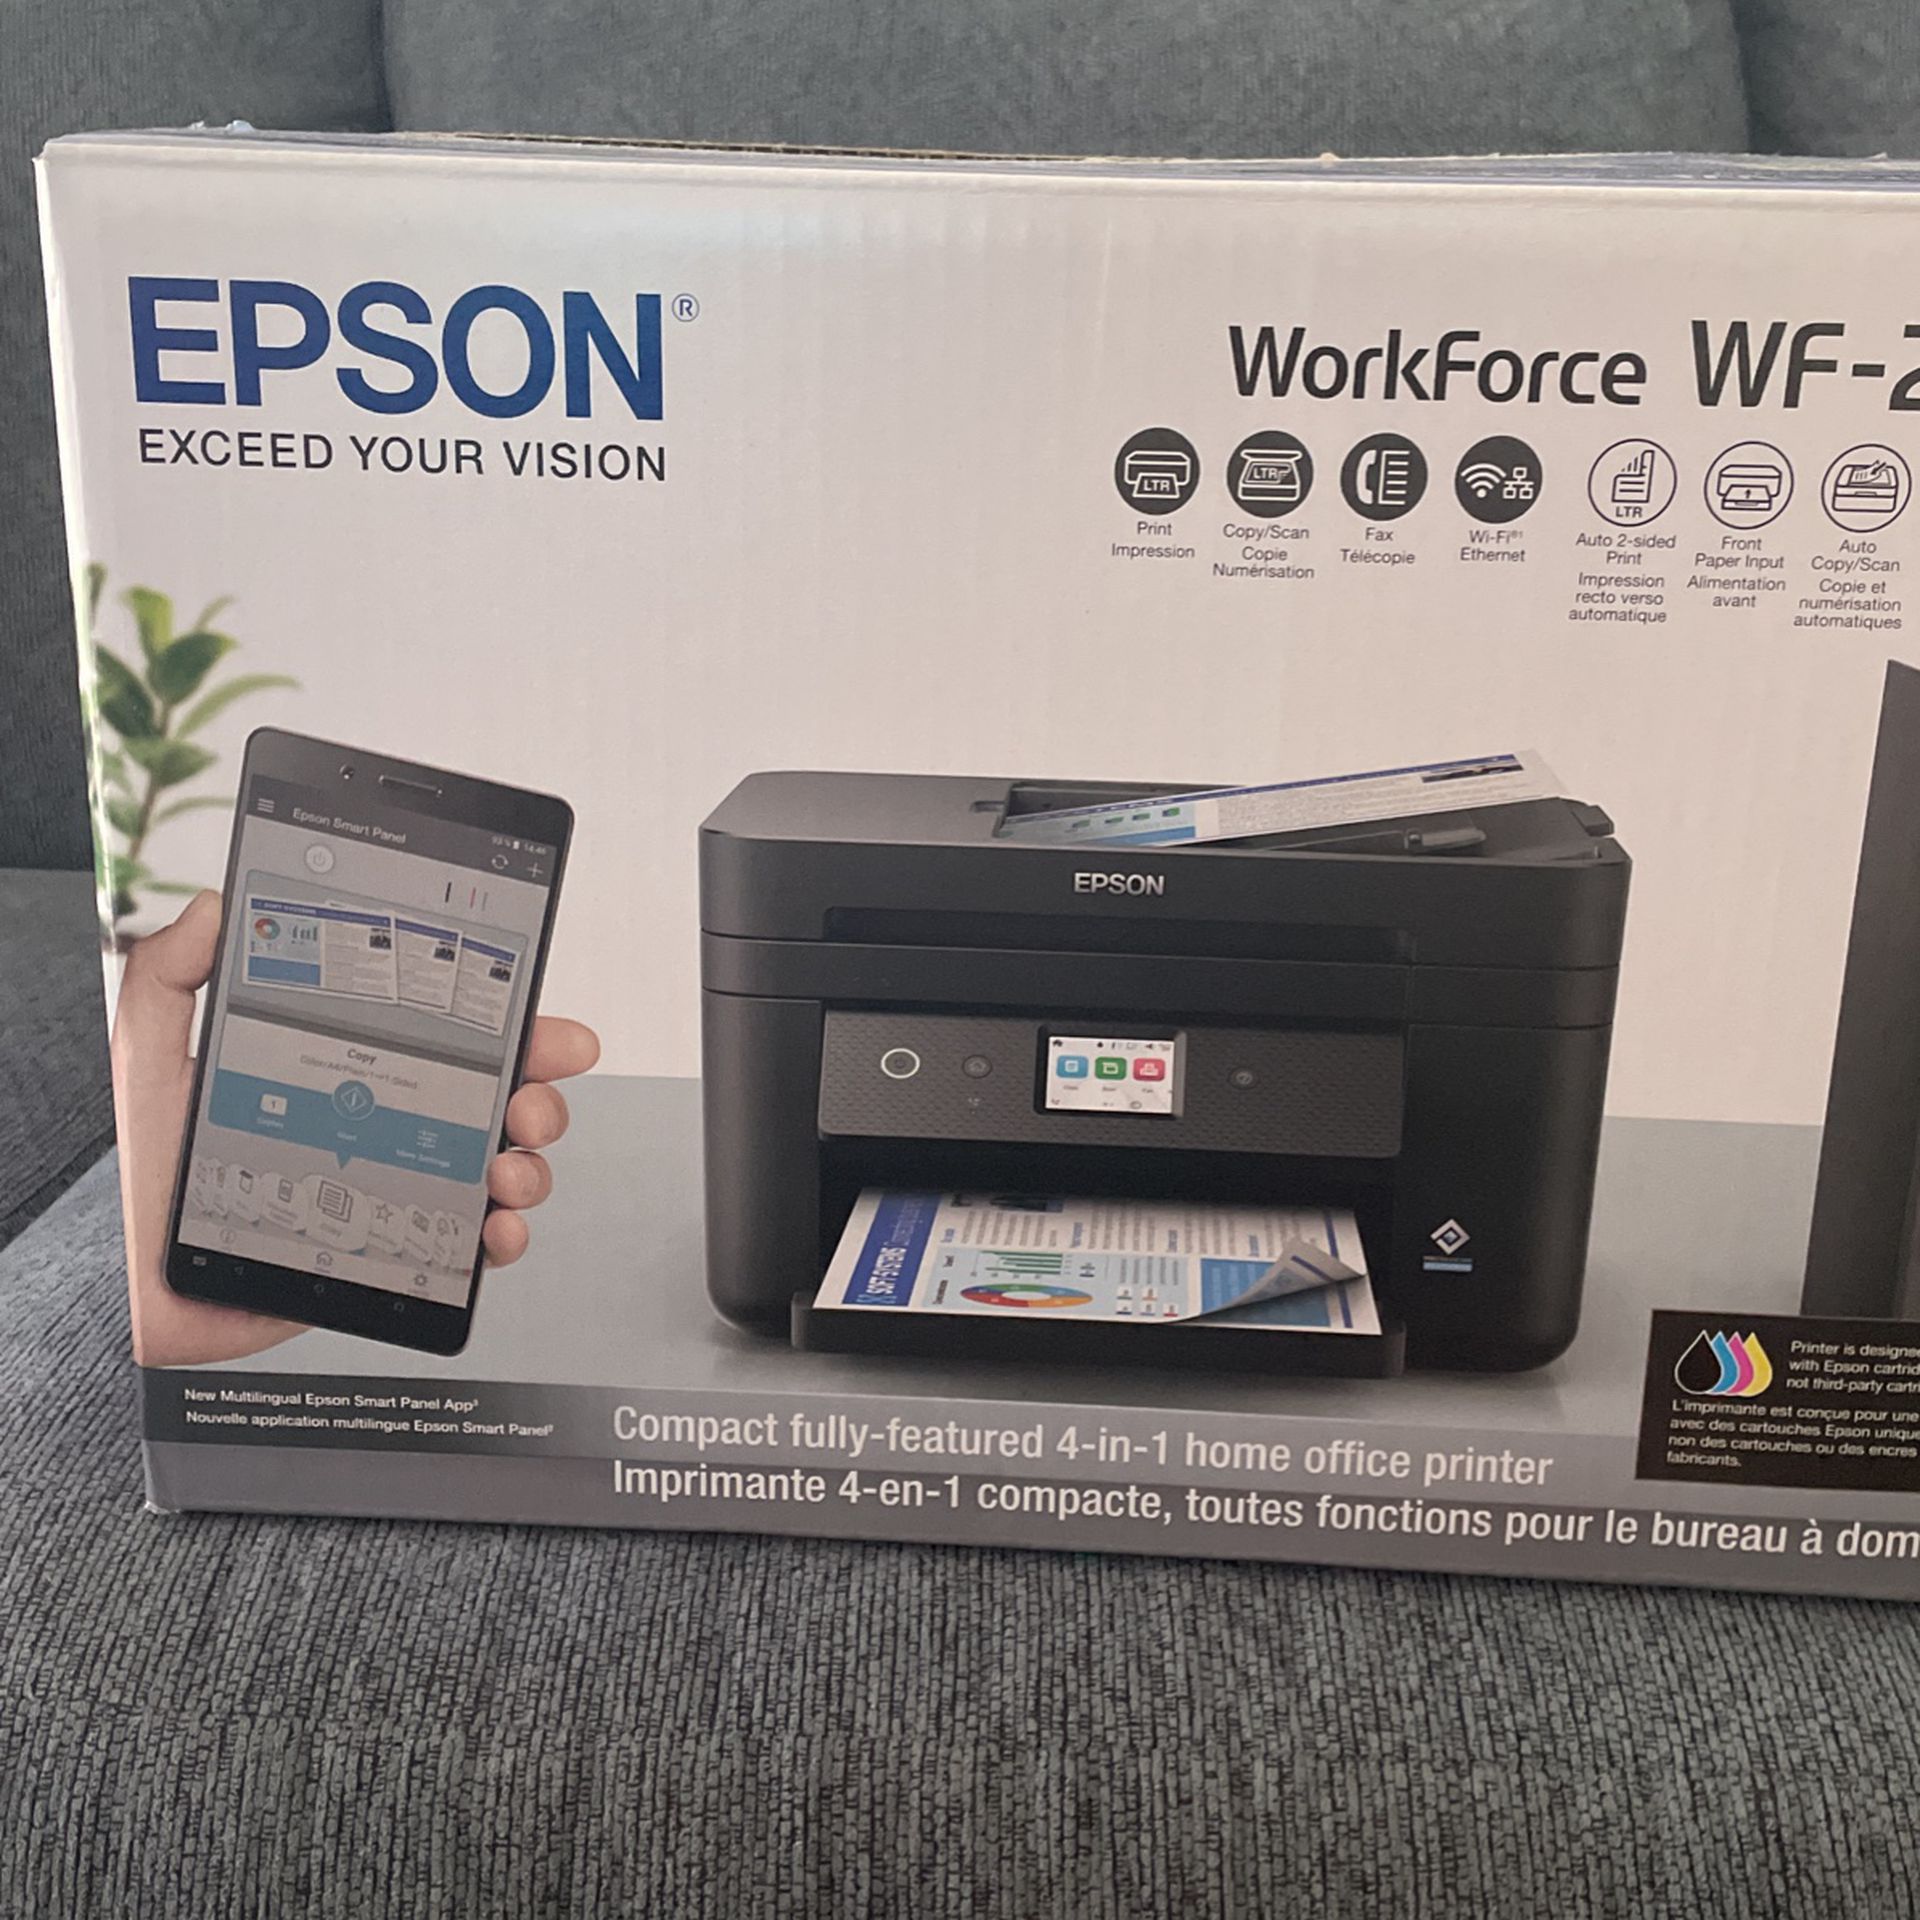 Epson Workforce WF-2960